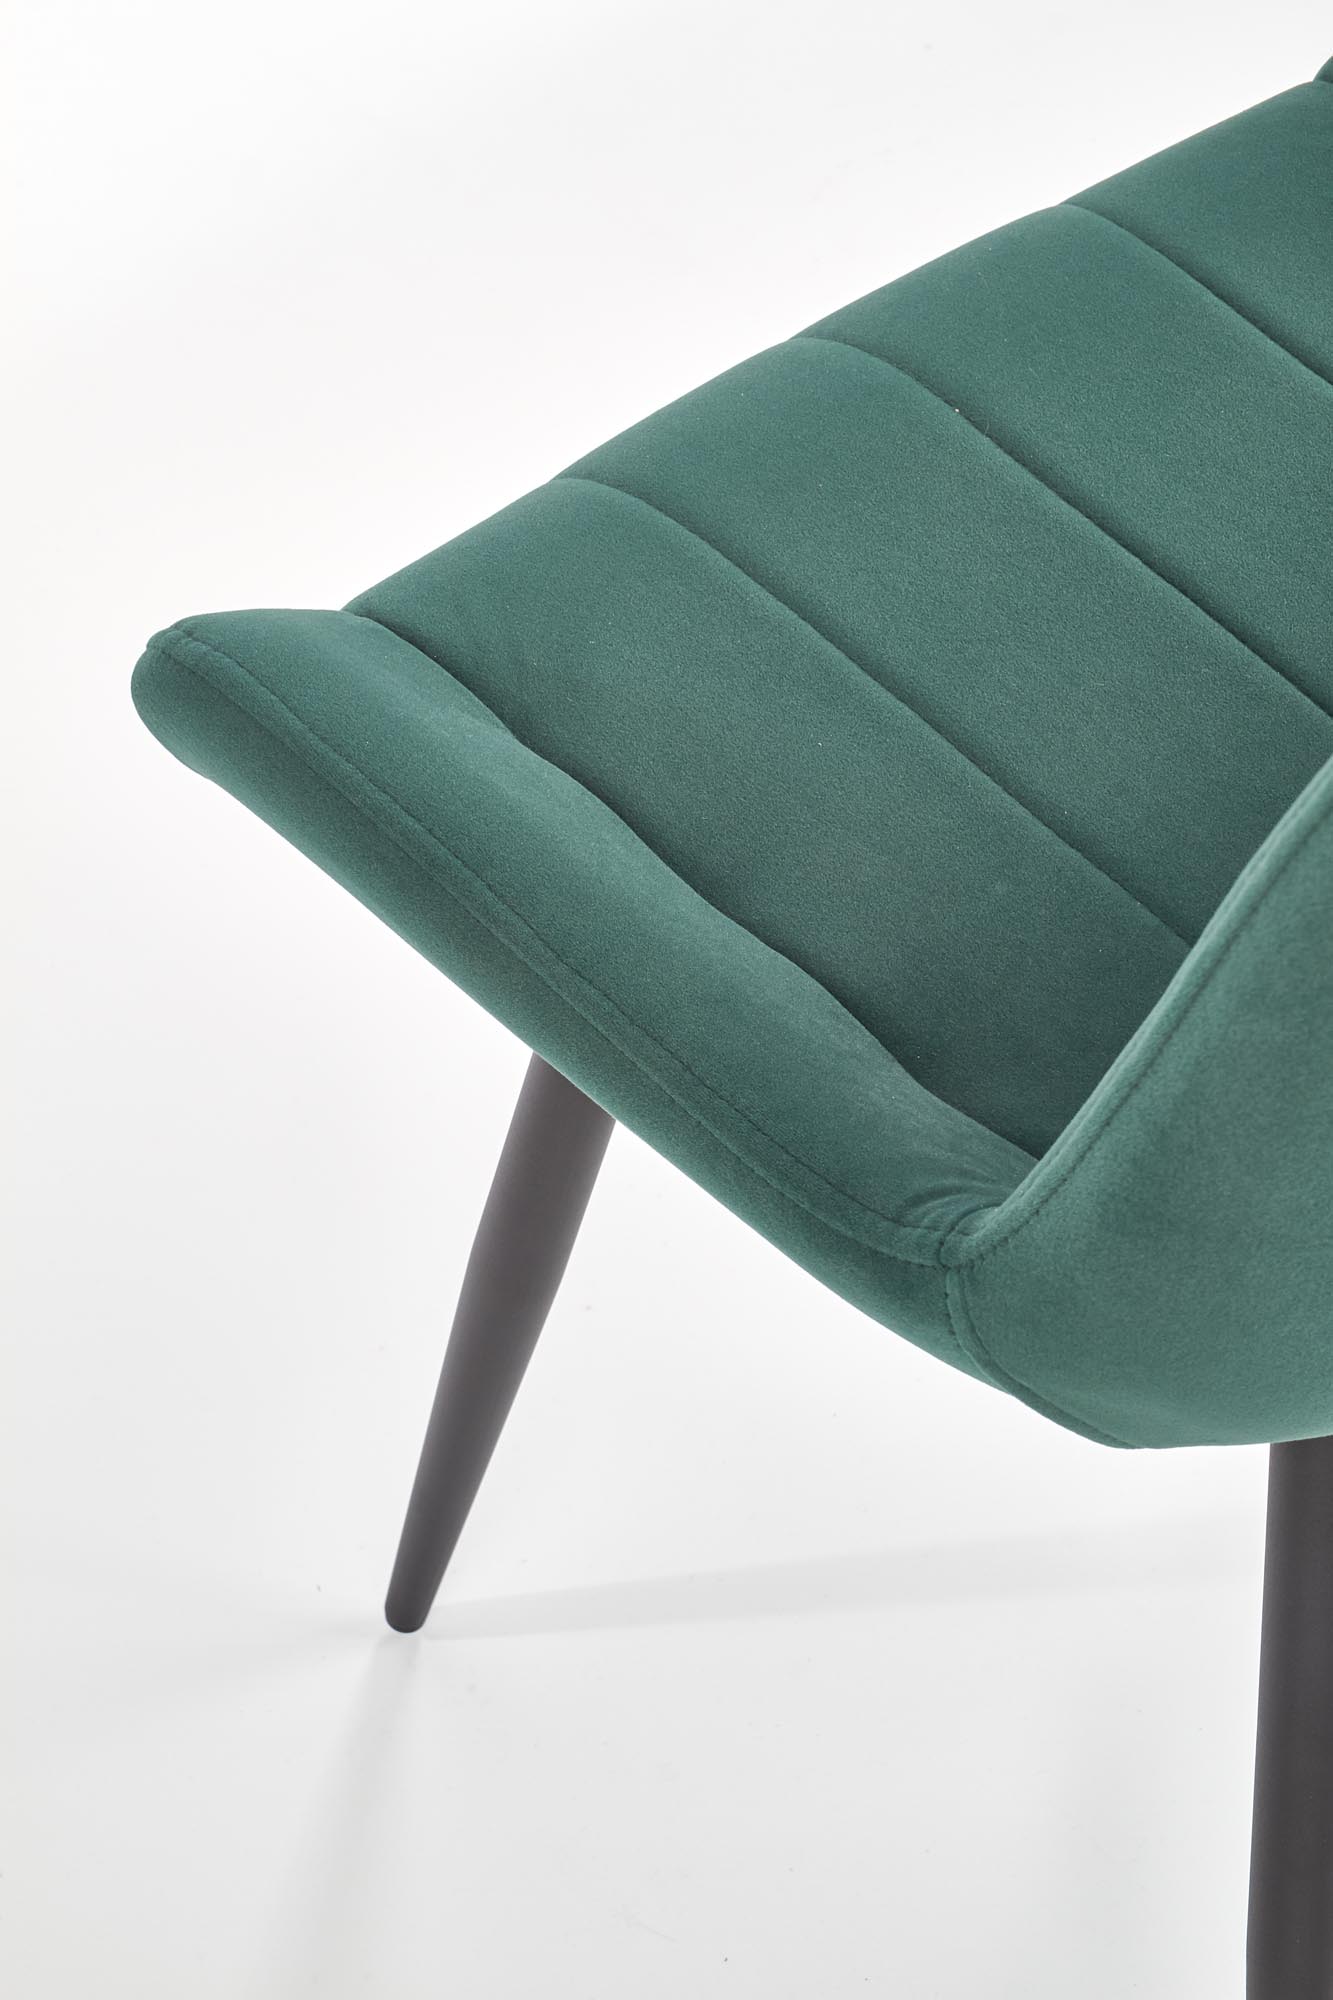 K388 kárpitozott szék - sötétzöld Židle čalouněná K388 - tmavě zelená